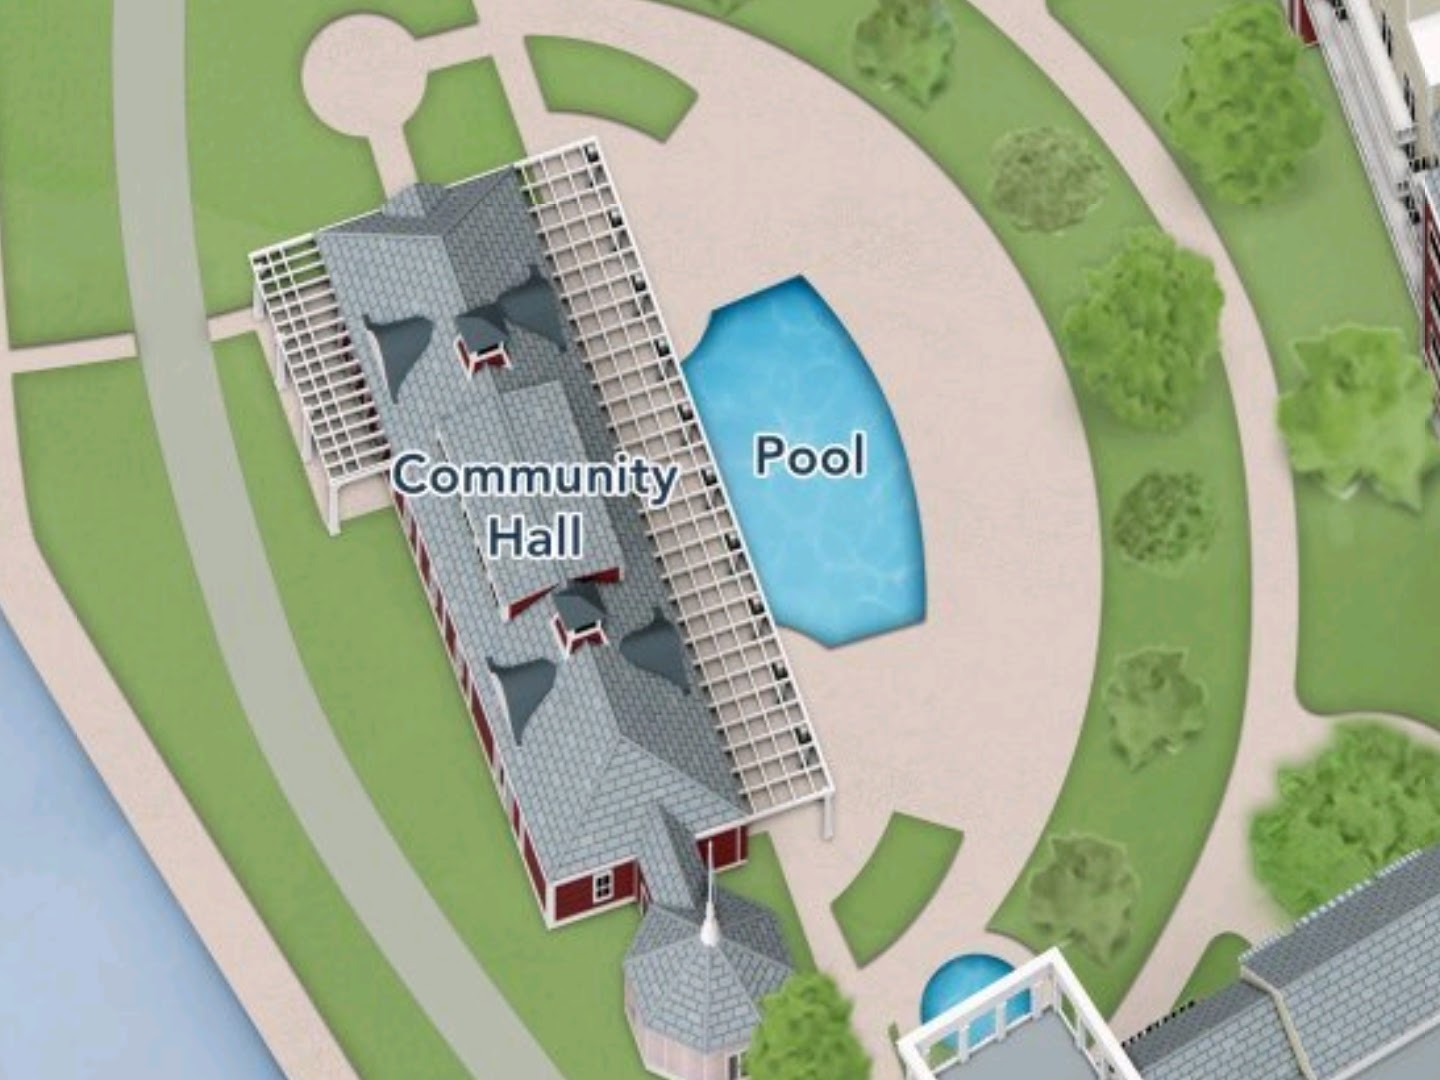 Community Hall Pool